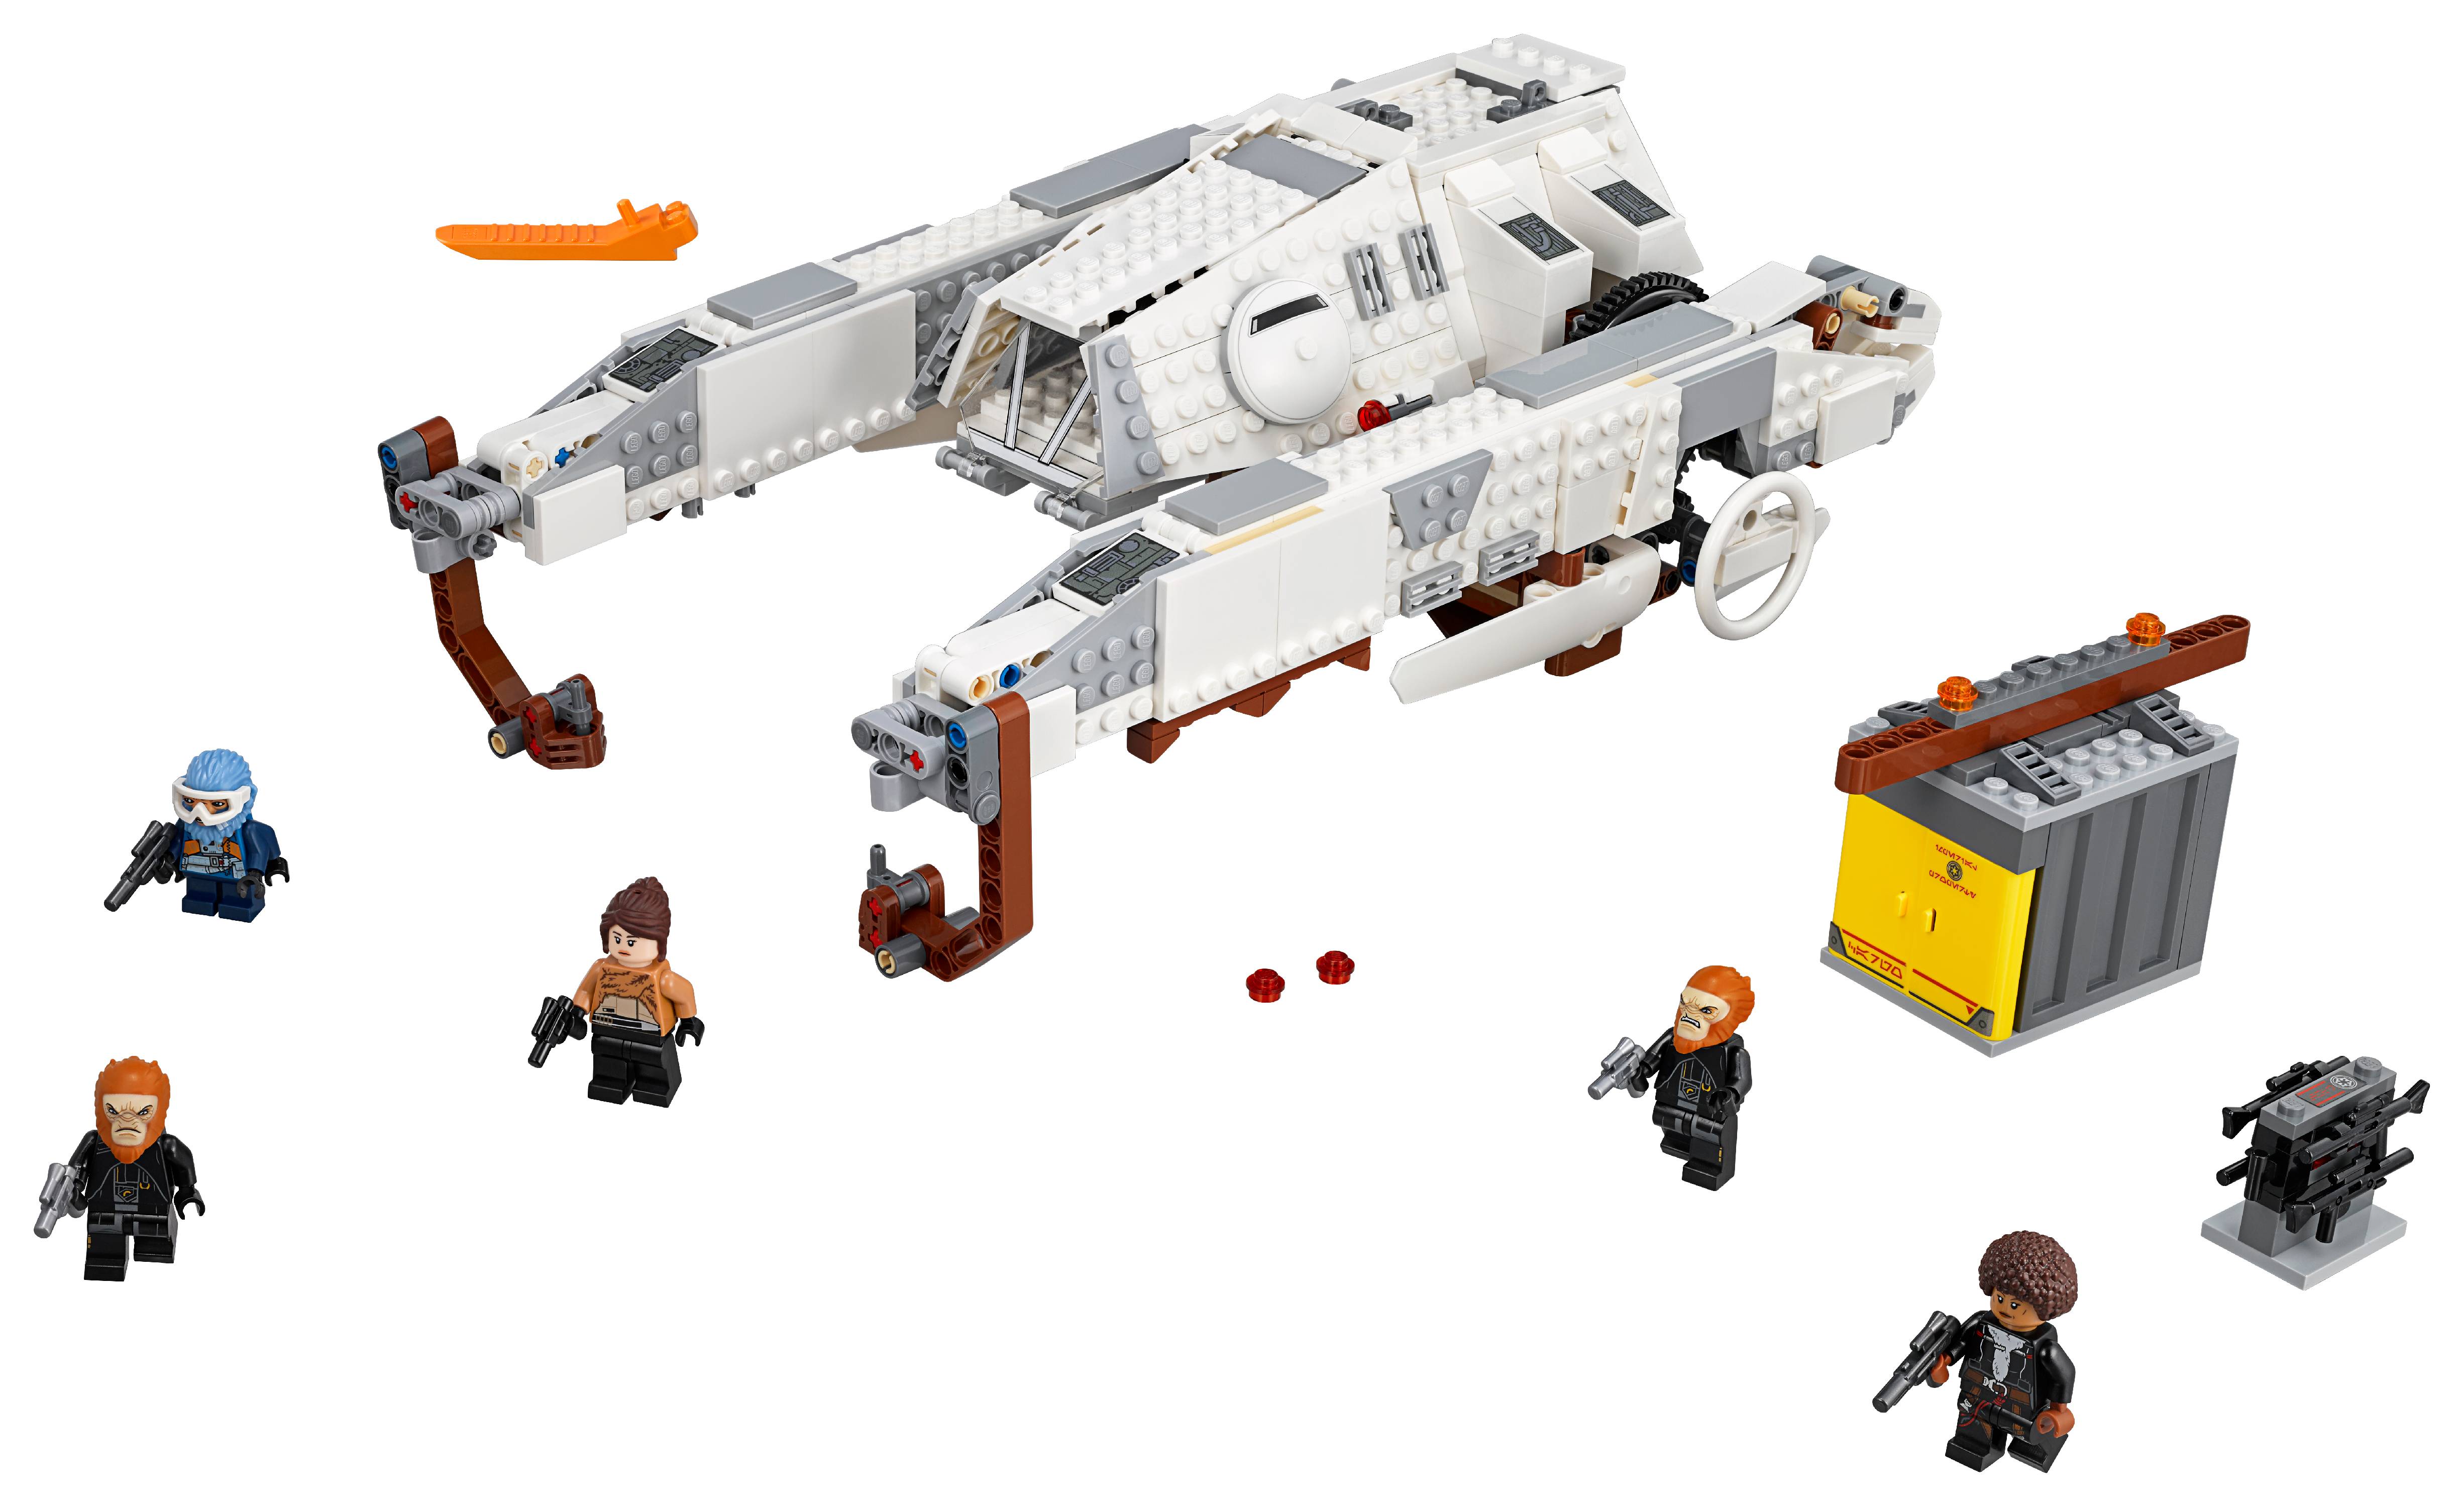 LEGO Star Wars TM Imperial AT-Hauler 75219 Building Set - image 2 of 7